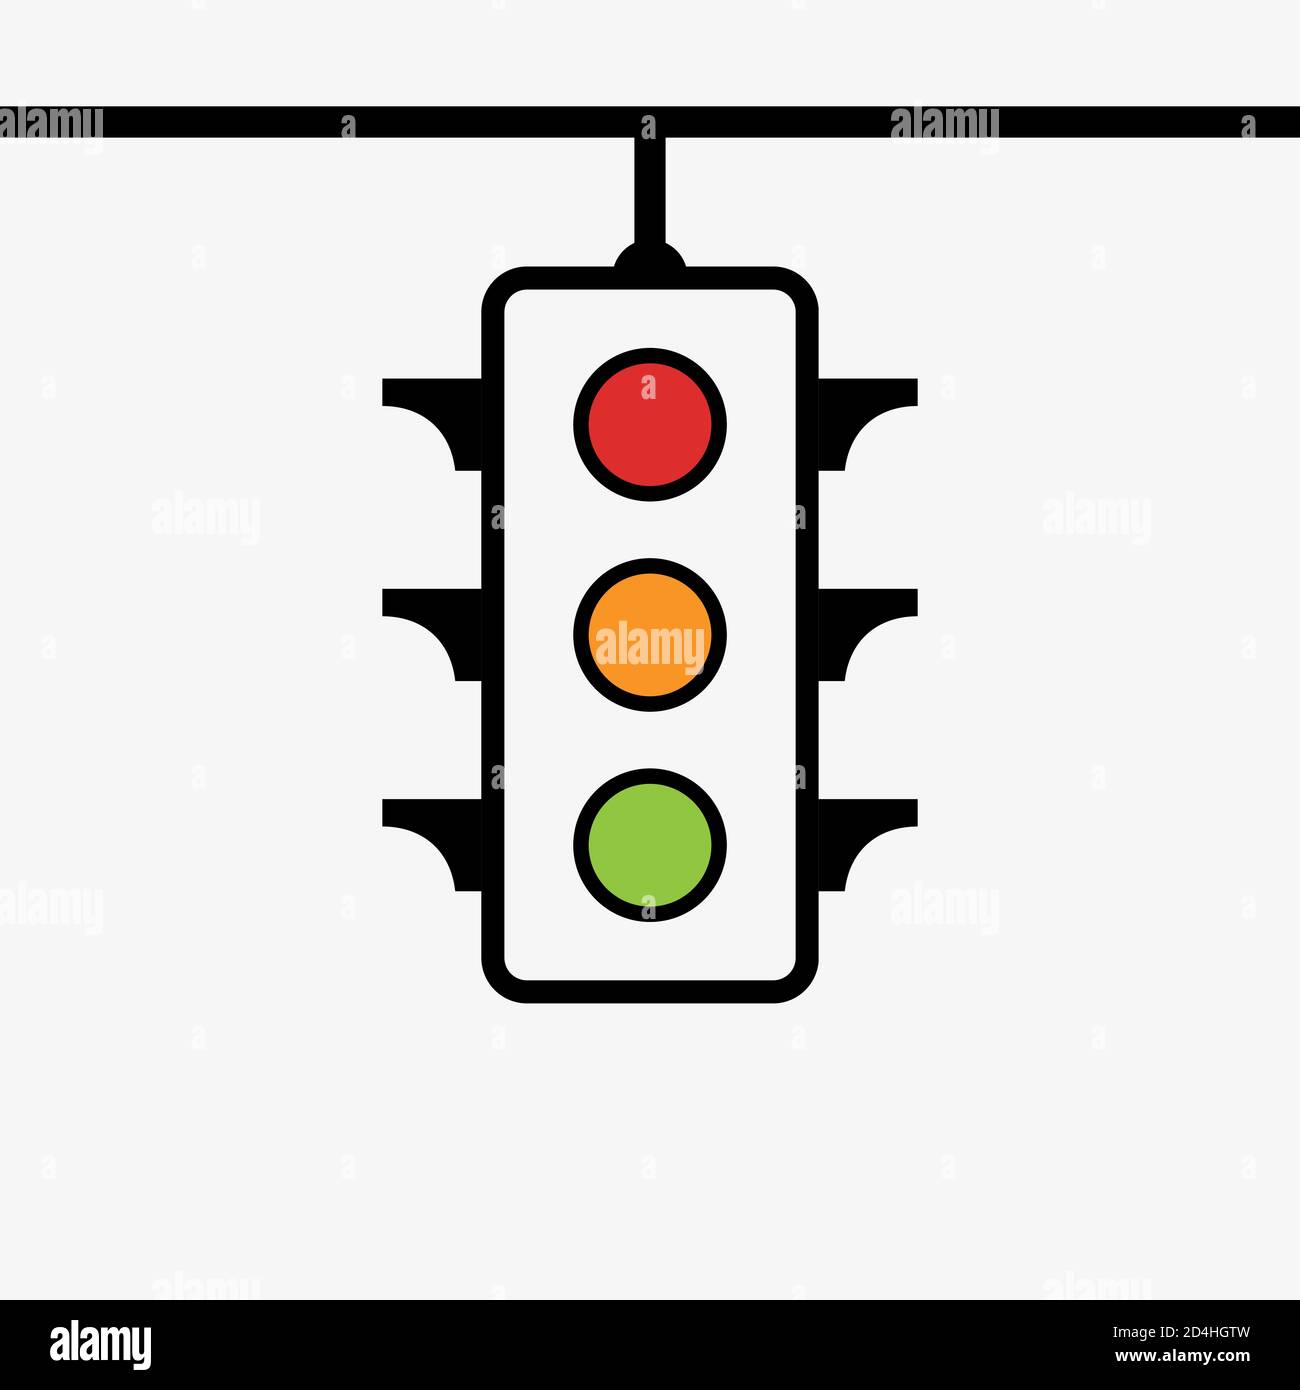 Señal de luz de control de tráfico con icono plano de color rojo, amarillo y verde para aplicaciones y sitios web Ilustración del Vector